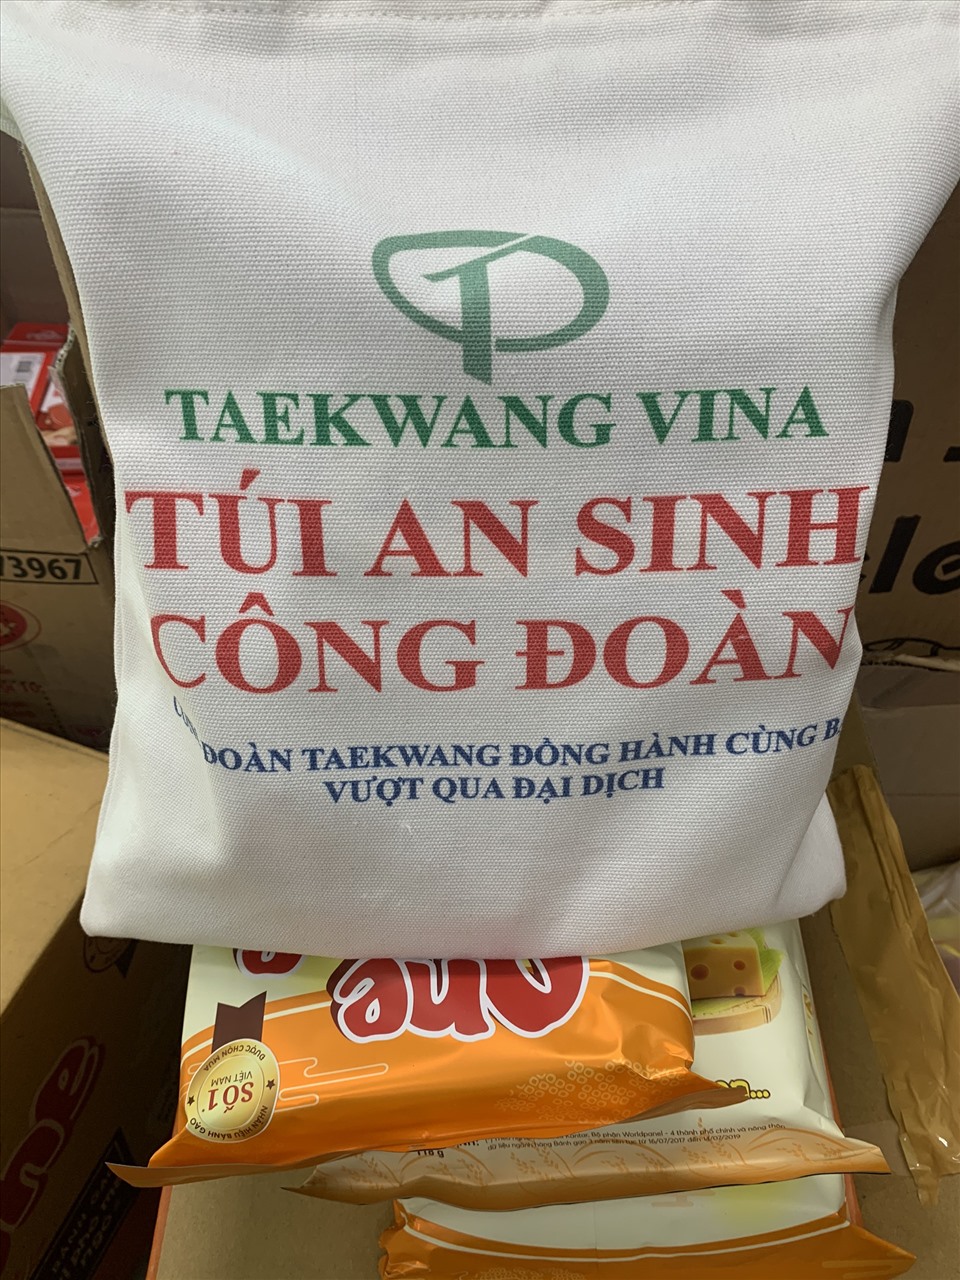 Công đoàn tặng túi an sinh cho cho người lao động bị ảnh hưởng dịch bệnh COVID-19. Ảnh: Hà Anh Chiến